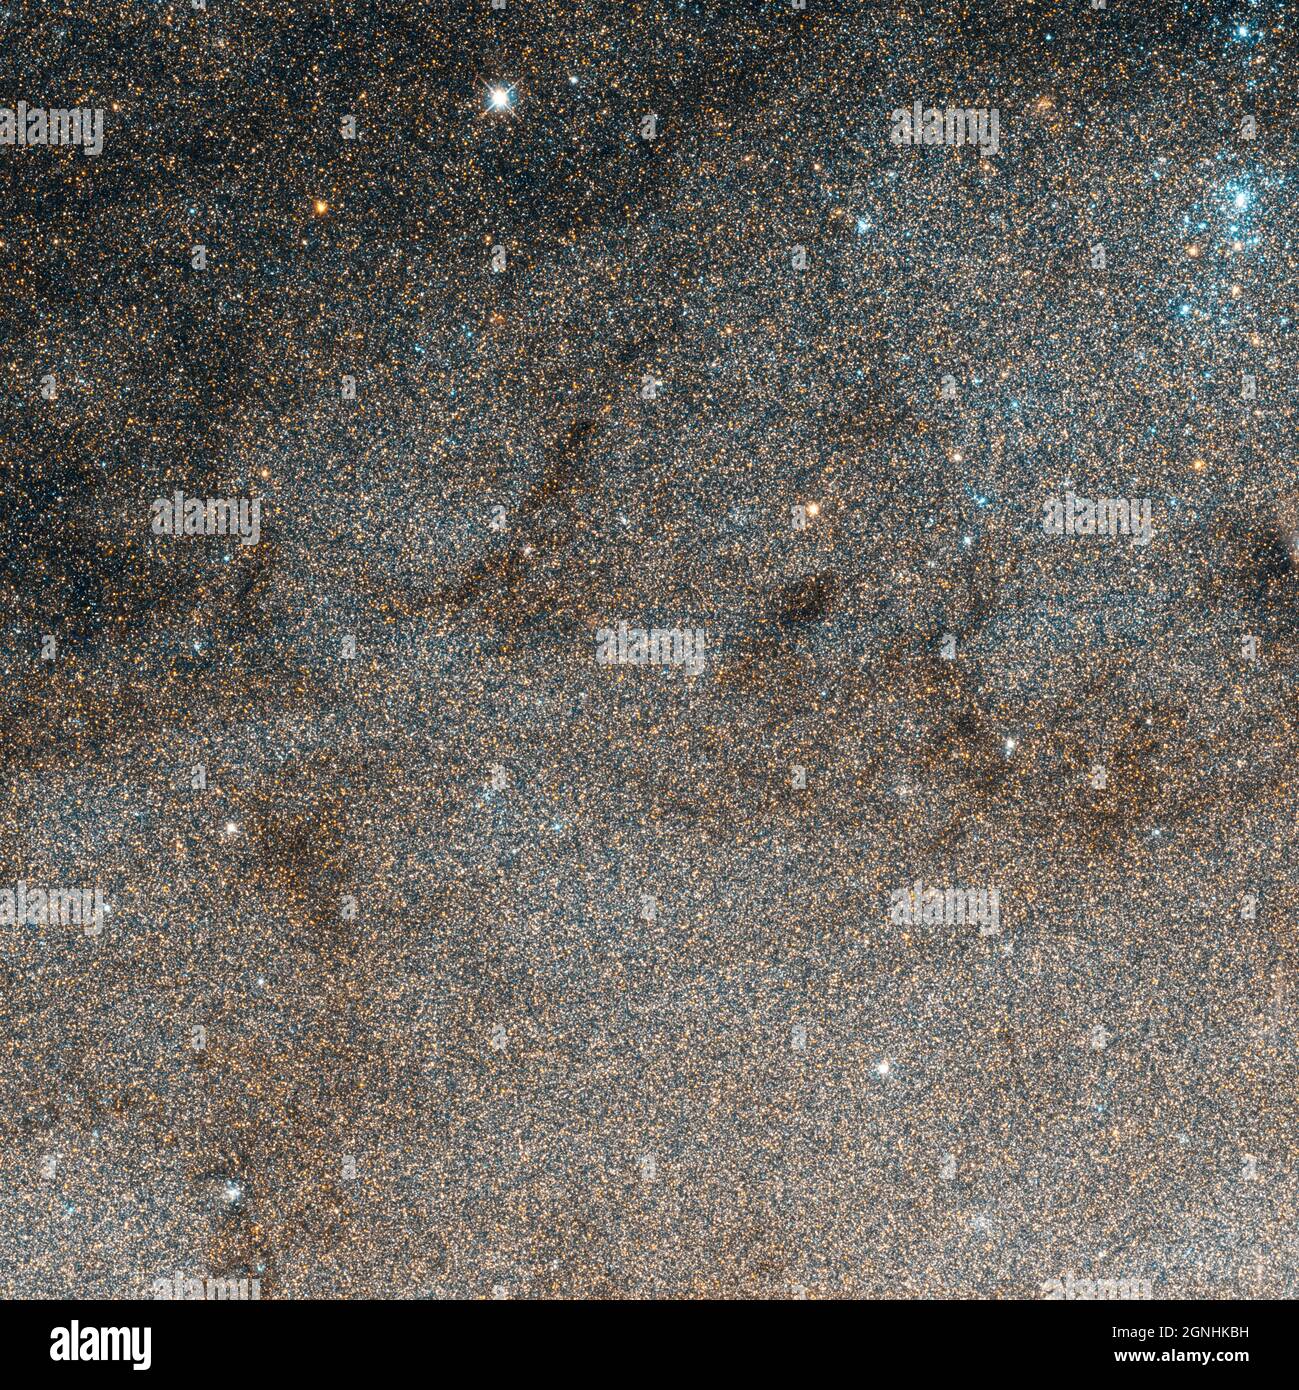 Miliardi di stelle in M31, la galassia Andromeda. Fonte immagine NASA/ESA Hubble Space Telescope Foto Stock